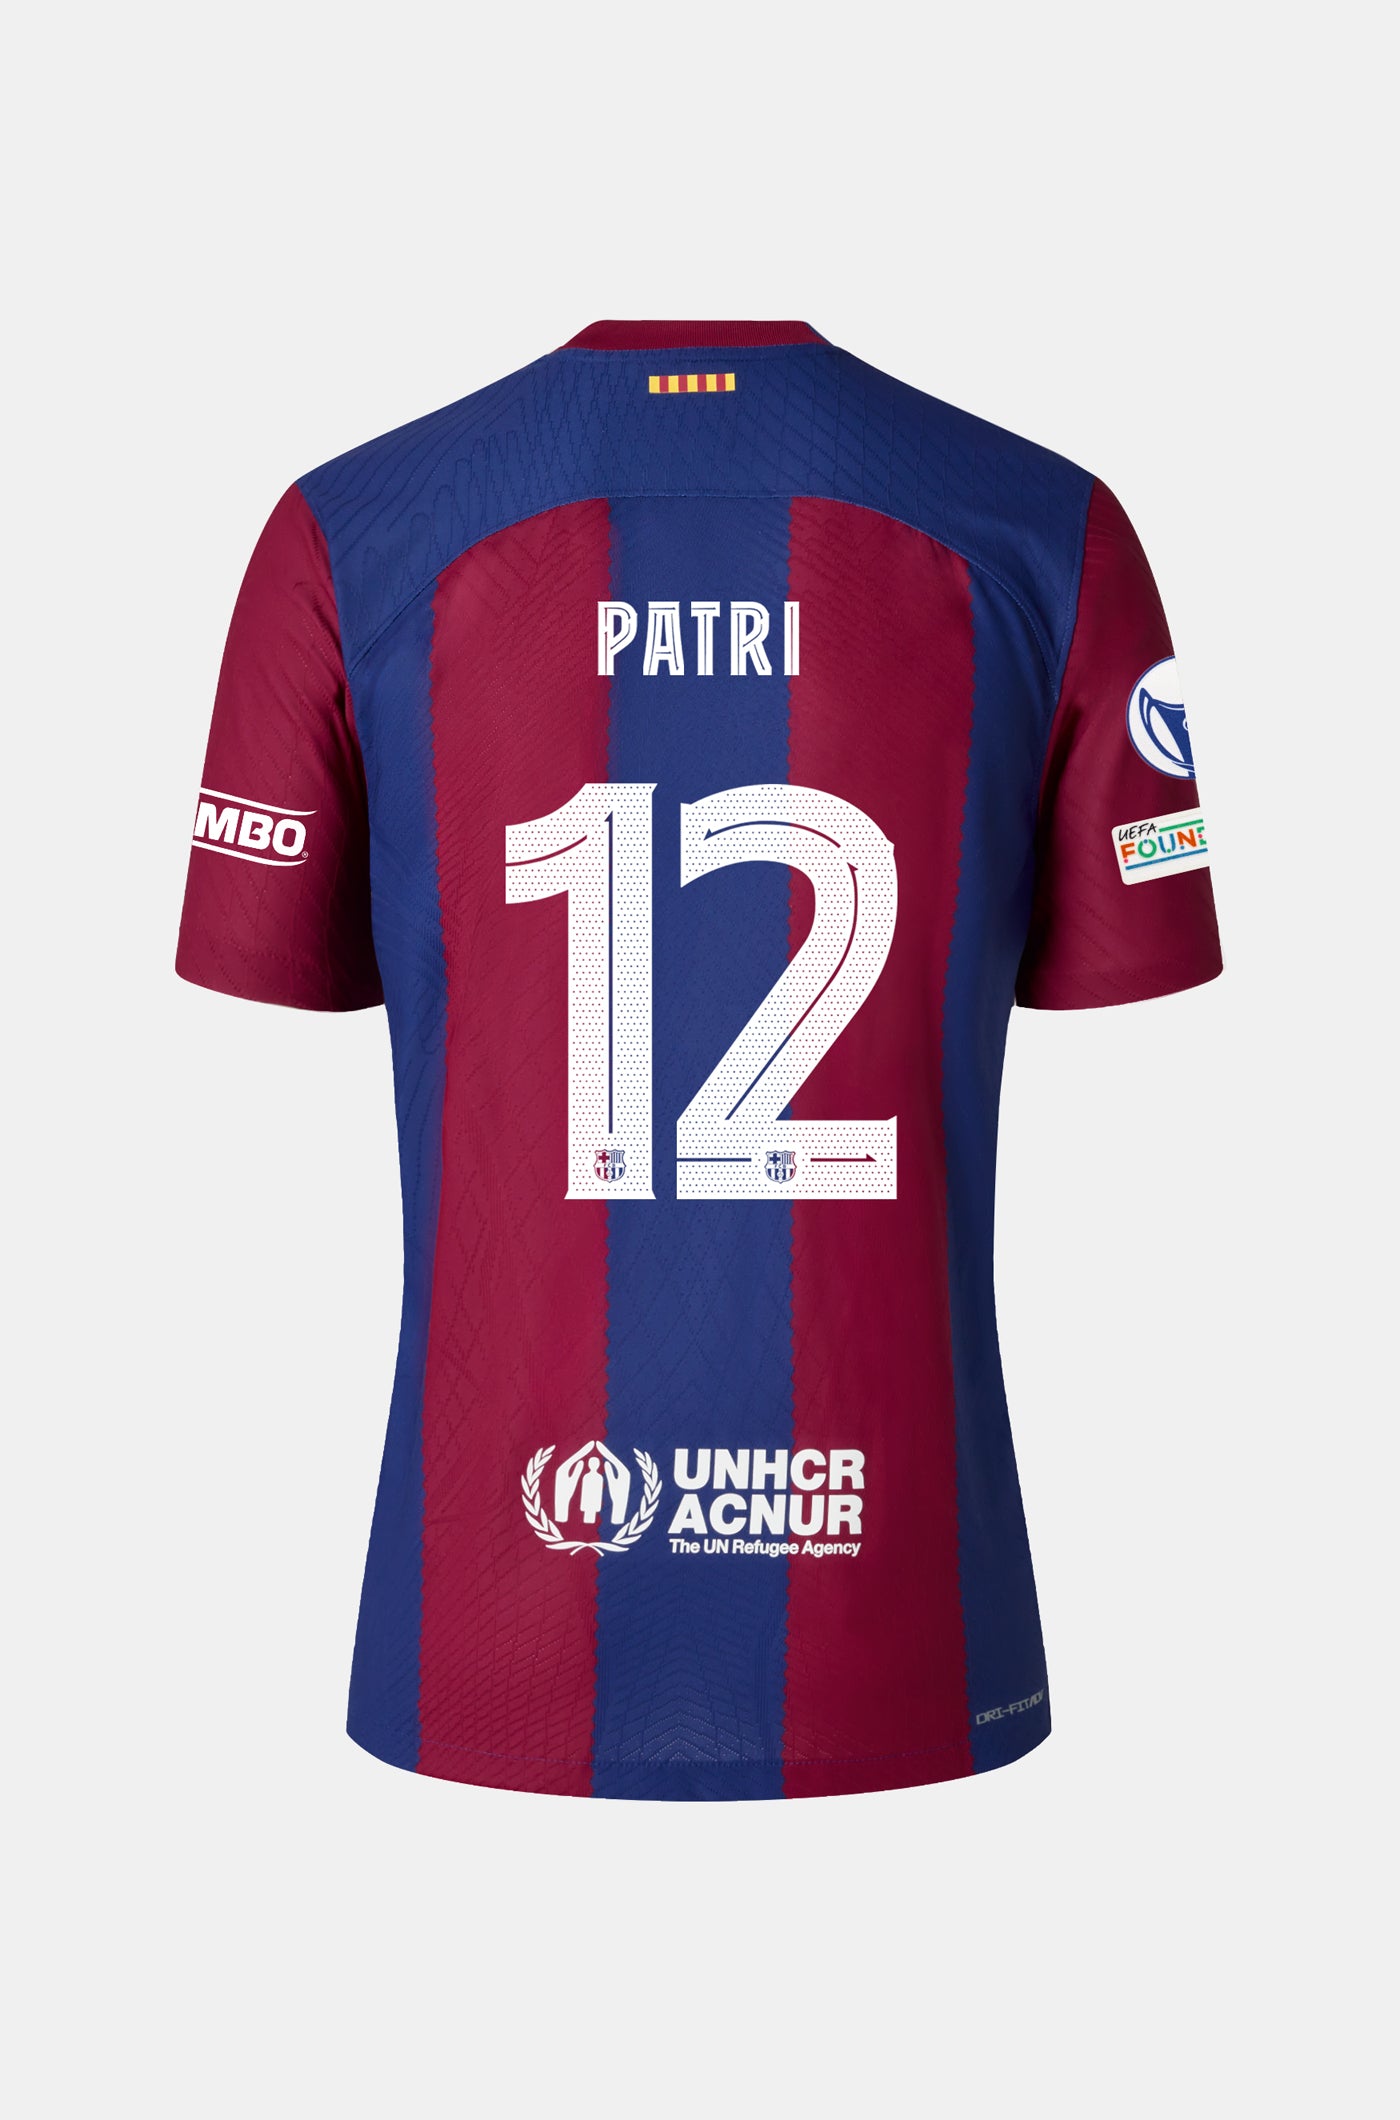 UWCL Samarreta primer equipament FC Barcelona 23/24 - Home - PATRI